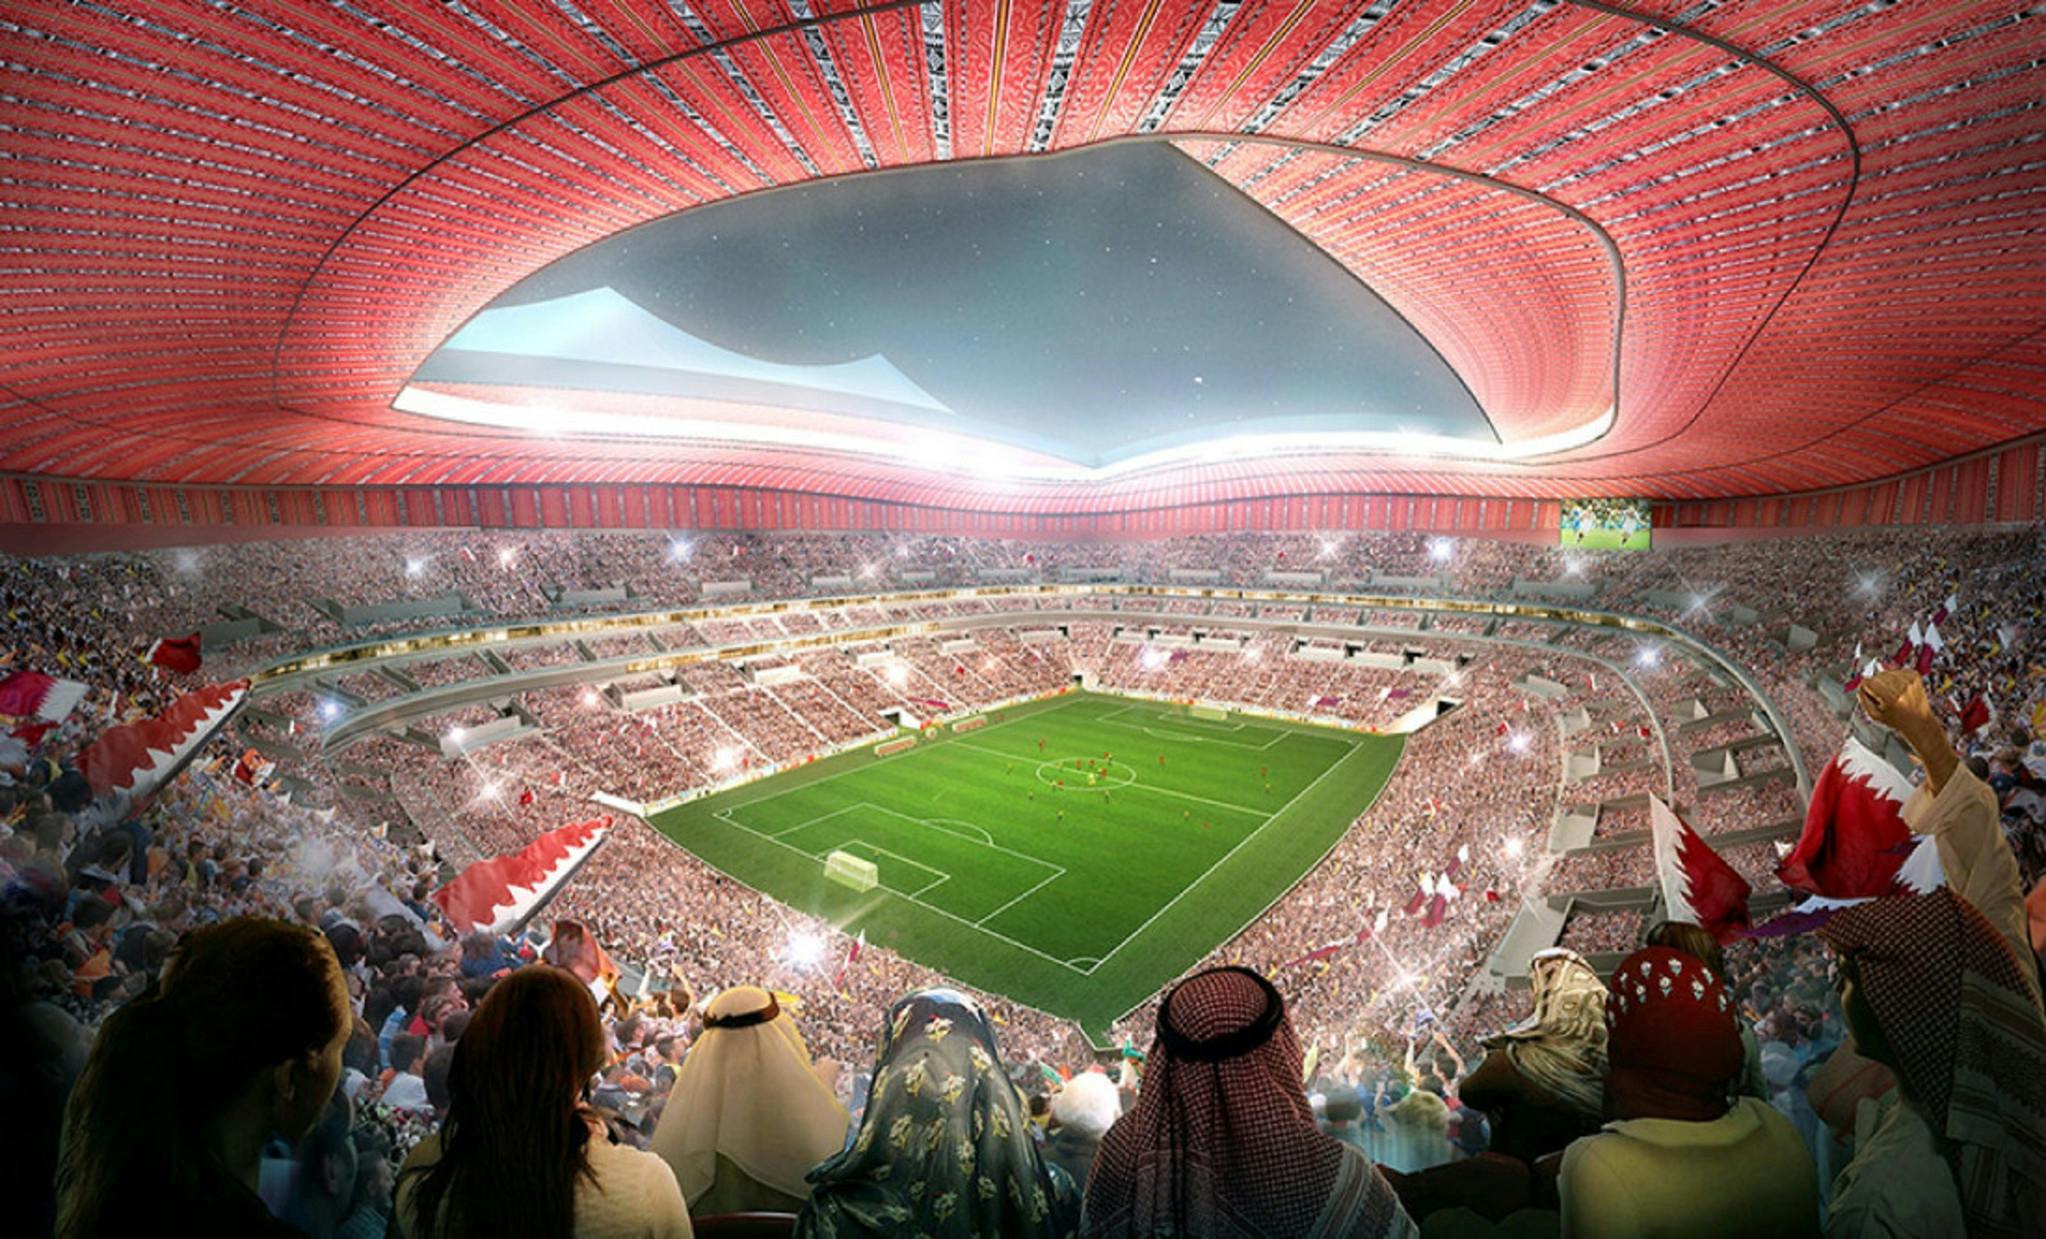 World stadiums. Стадион Аль байт Катар. Qatar 2022 World Cup Stadium. Стадион al Bayt Stadium. FIFA World Cup Qatar 2022.